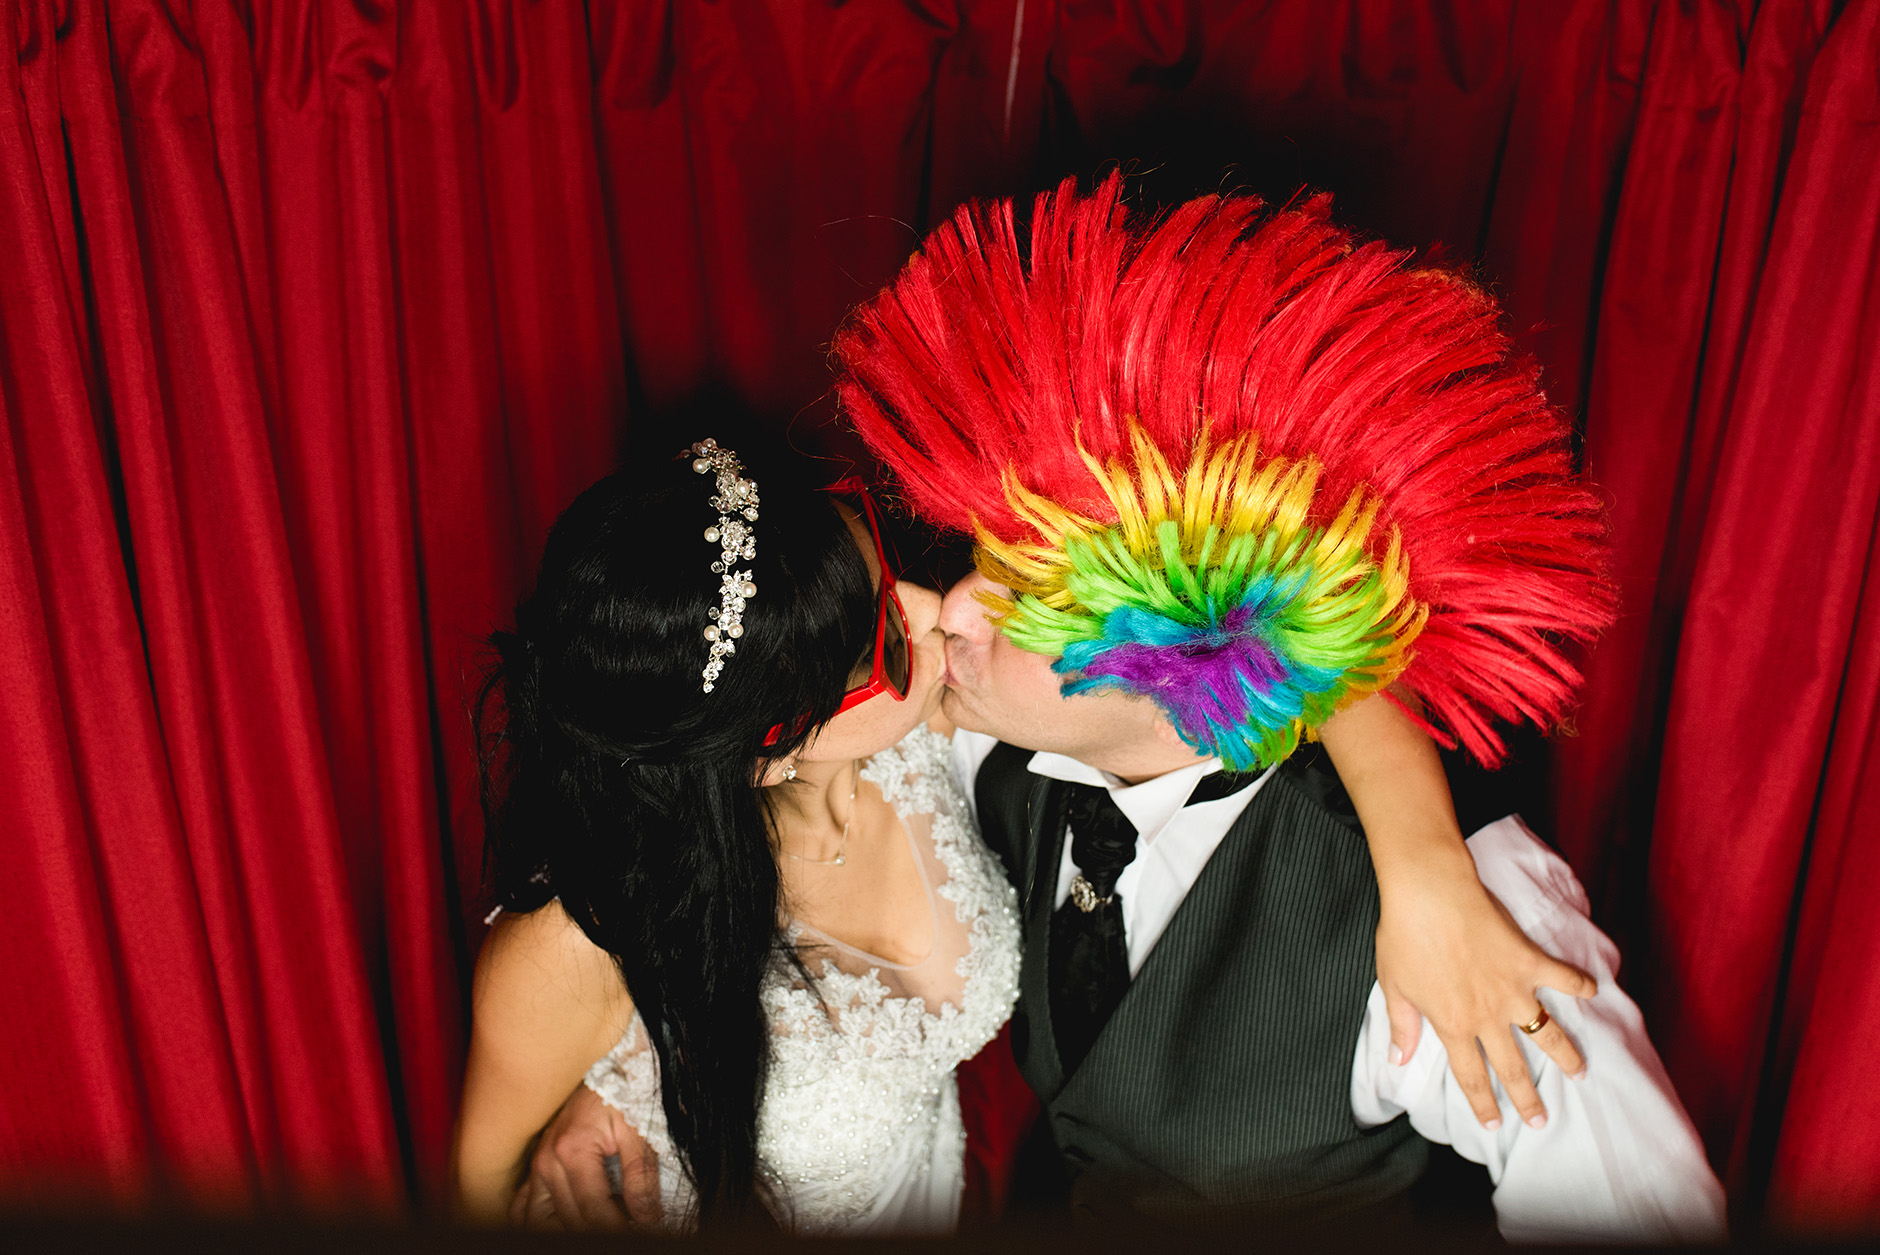 Fotos de la boda de Cintia y Cristian en Rosario realizadas por Bucle Fotografias. Flor Bosio y Caro Clerici